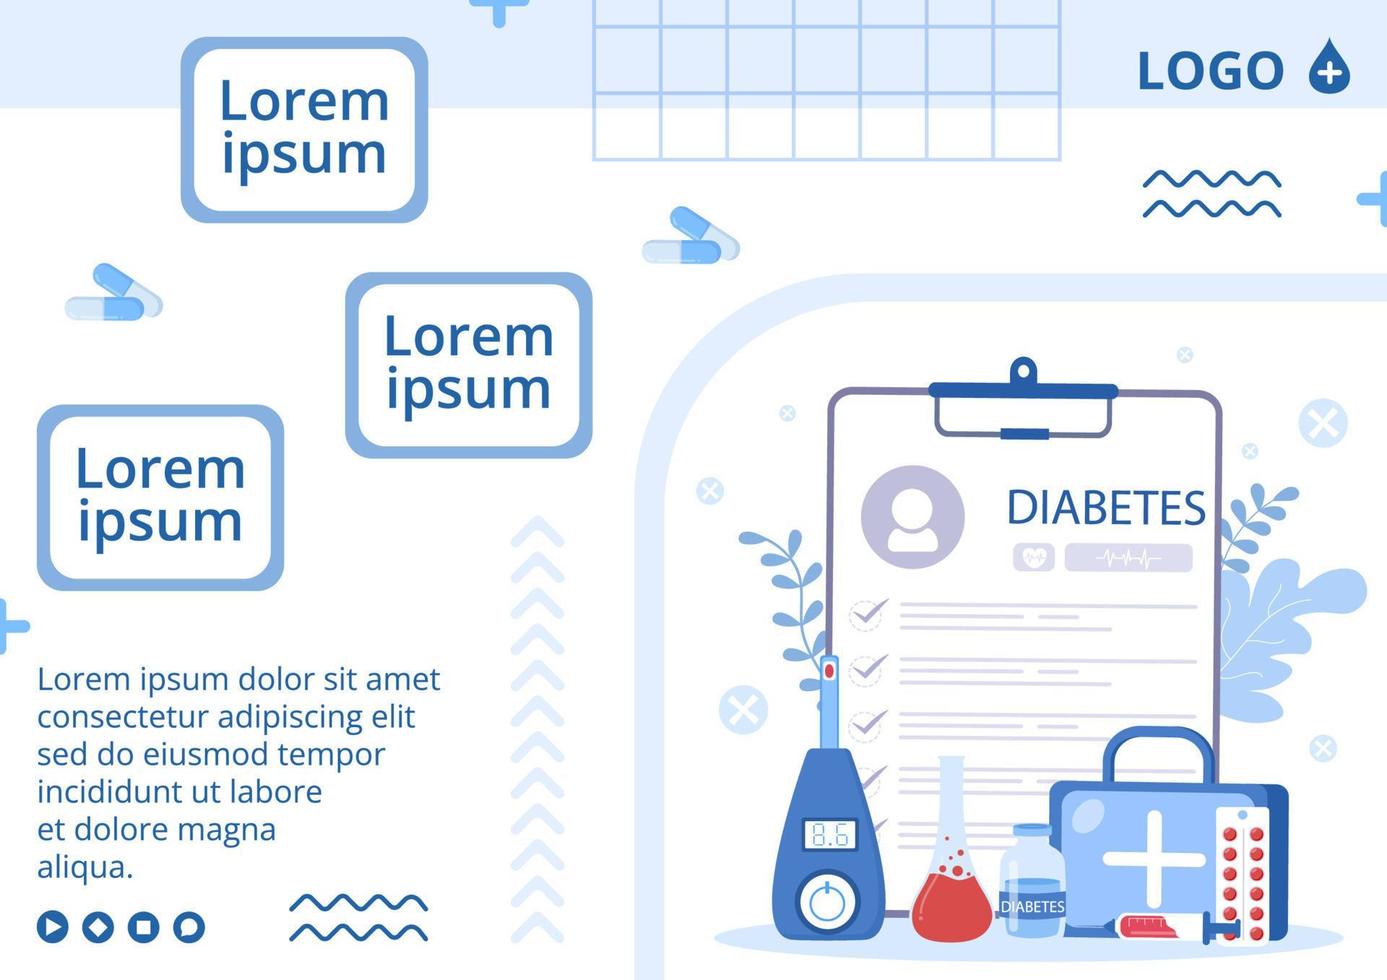 plantilla de folleto de prueba de diabetes ilustración de diseño plano editable de fondo cuadrado adecuado para redes sociales de atención médica o tarjeta de saludos vector